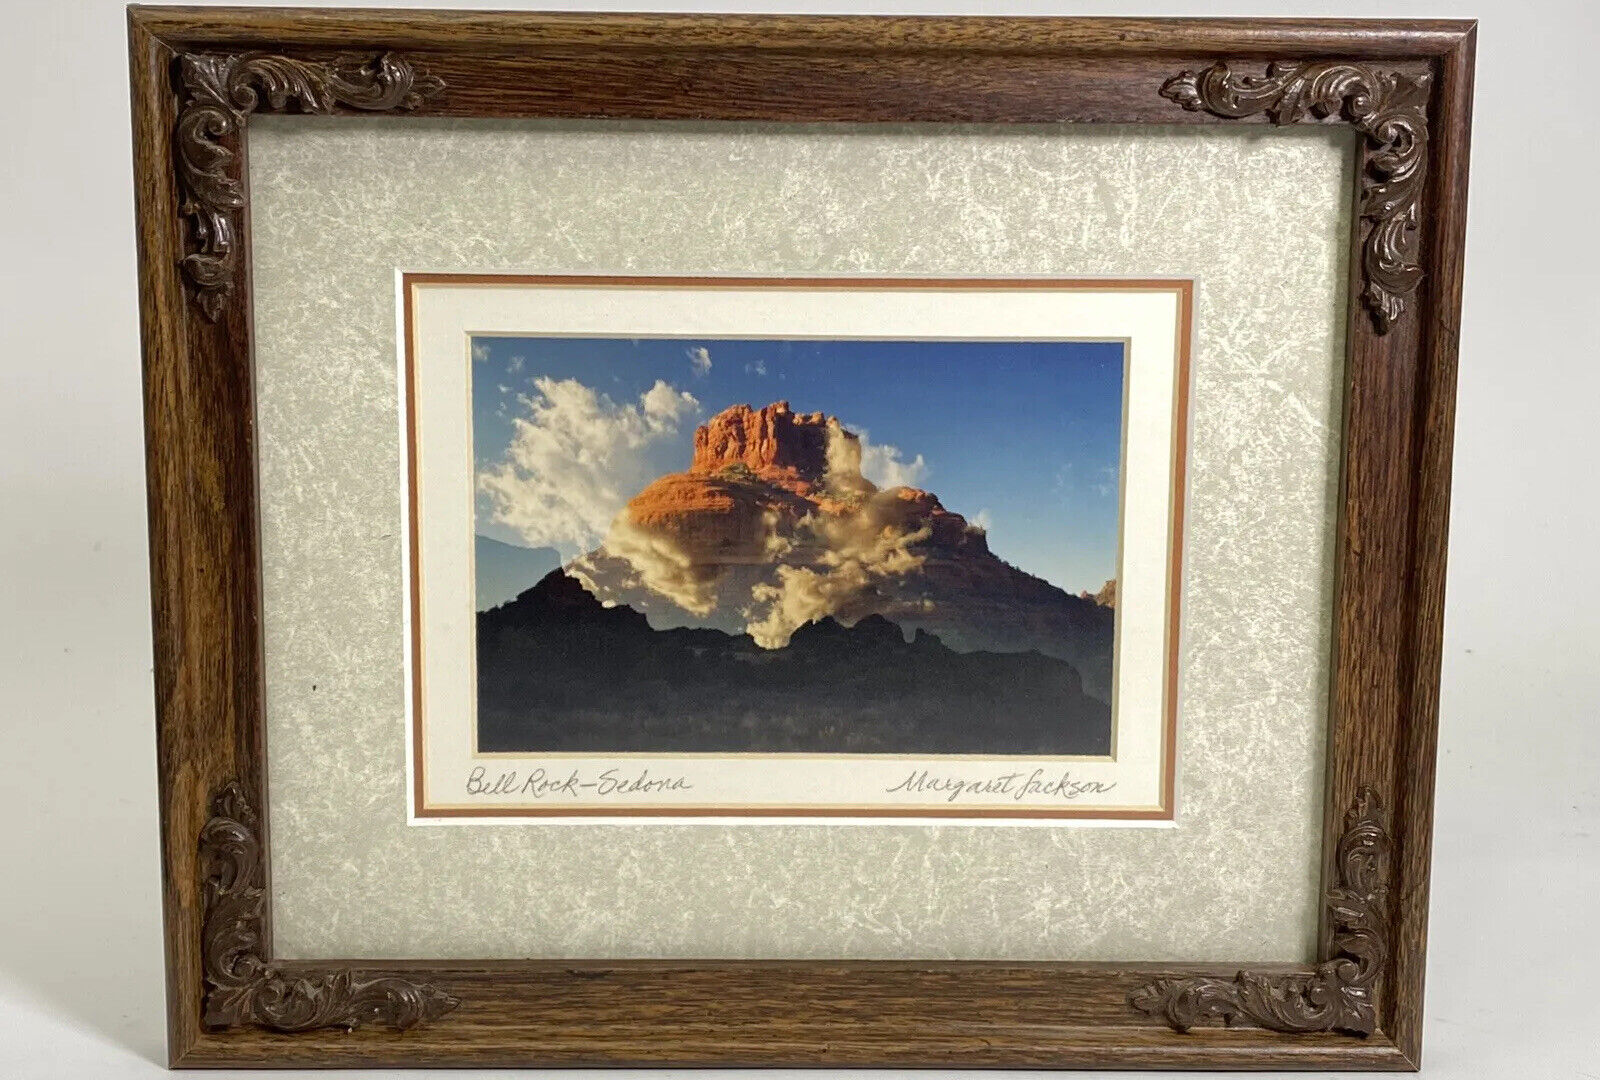 Margaret Jackson Bell Rock Sedona Framed / Signed Photograph Vintage Landscape